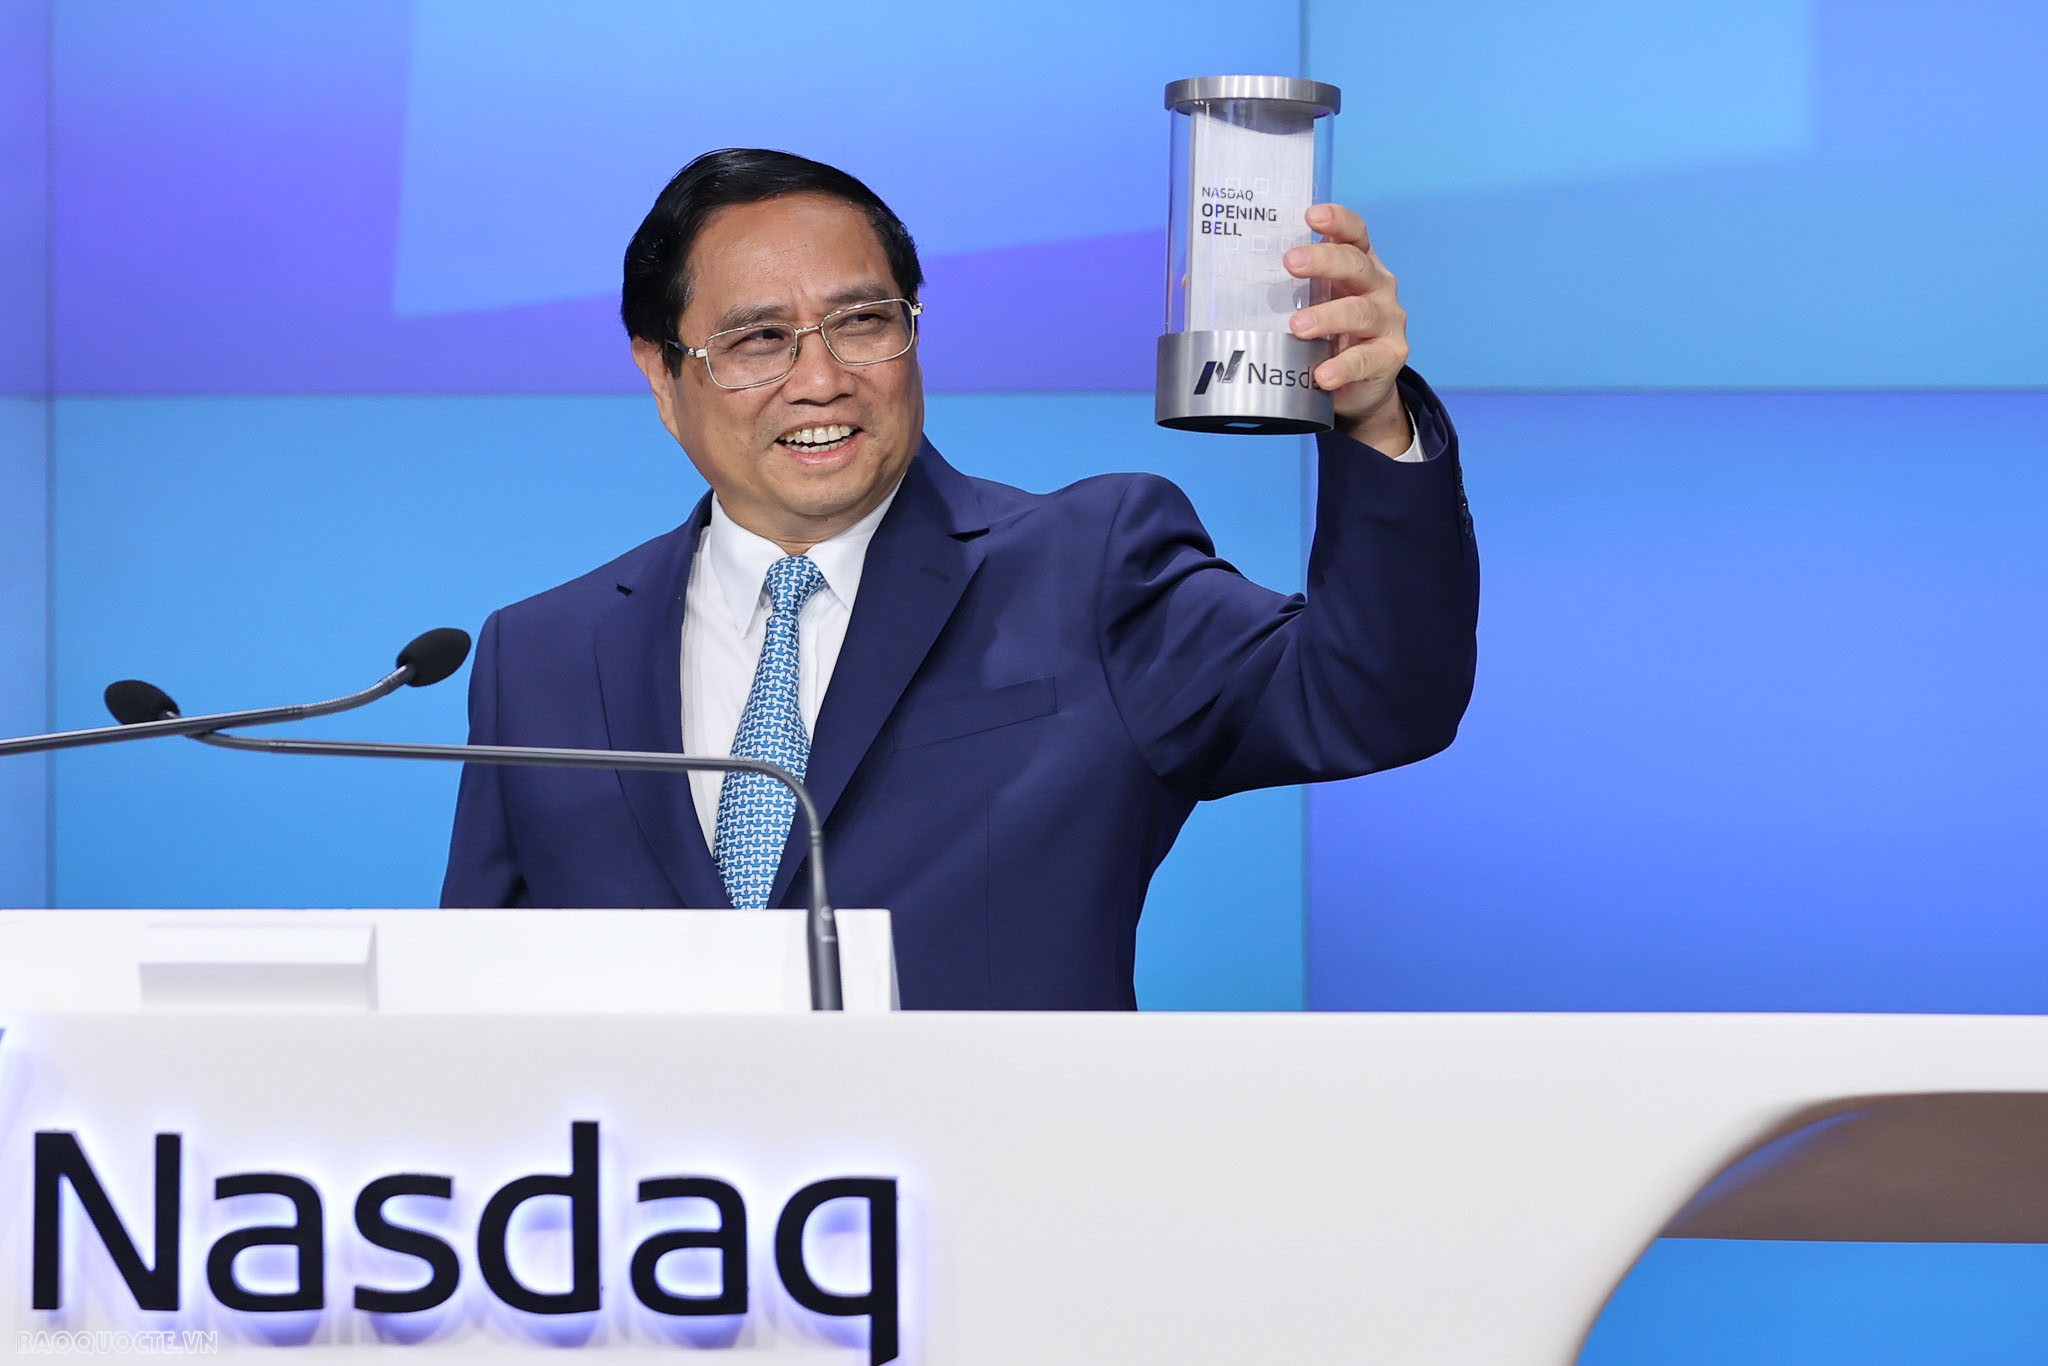 Rung chuông khai mạc tại Sàn chứng khoán NASDAQ, Thủ tướng mời các nhà đầu tư đến với Việt Nam